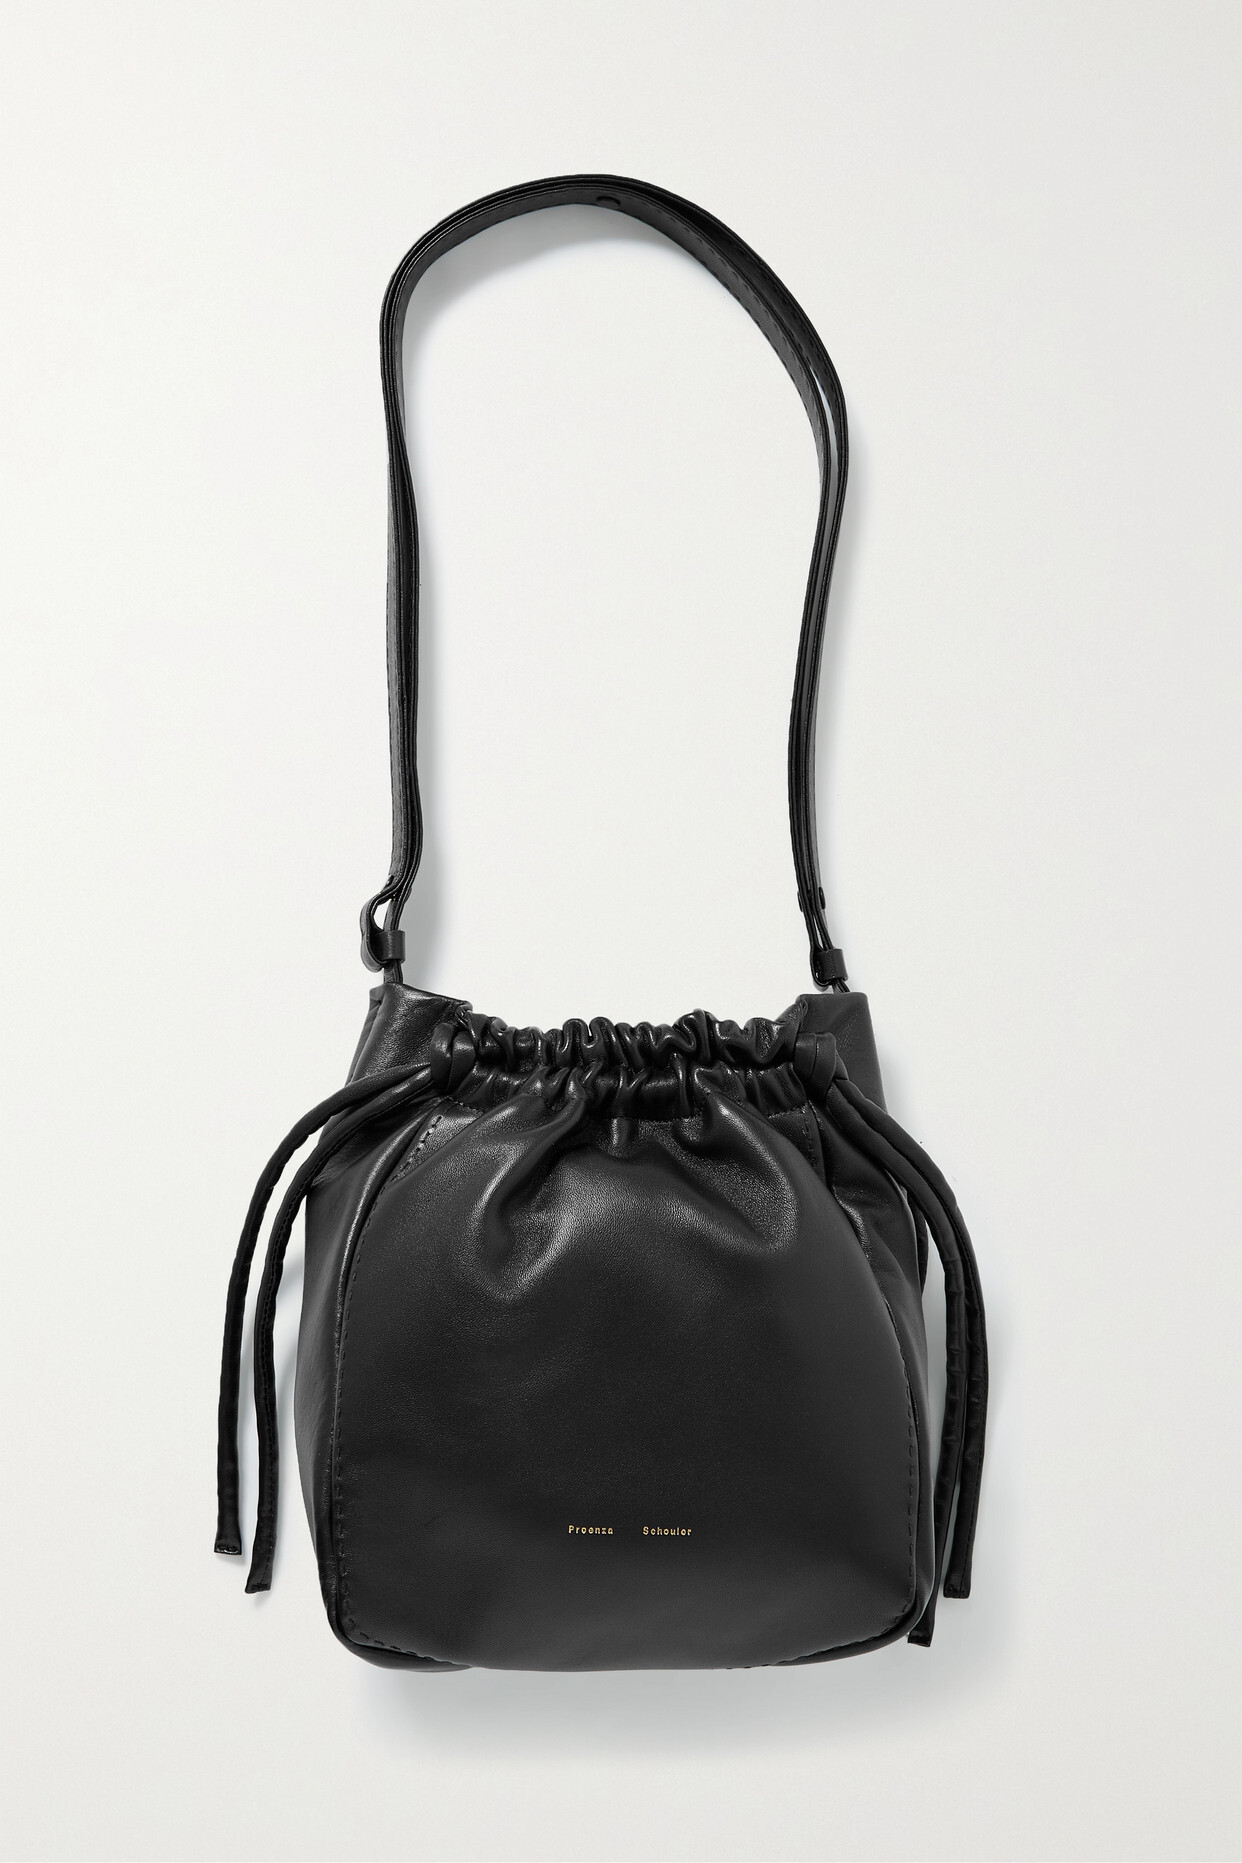 Proenza Schouler - Leather Shoulder Bag - Black